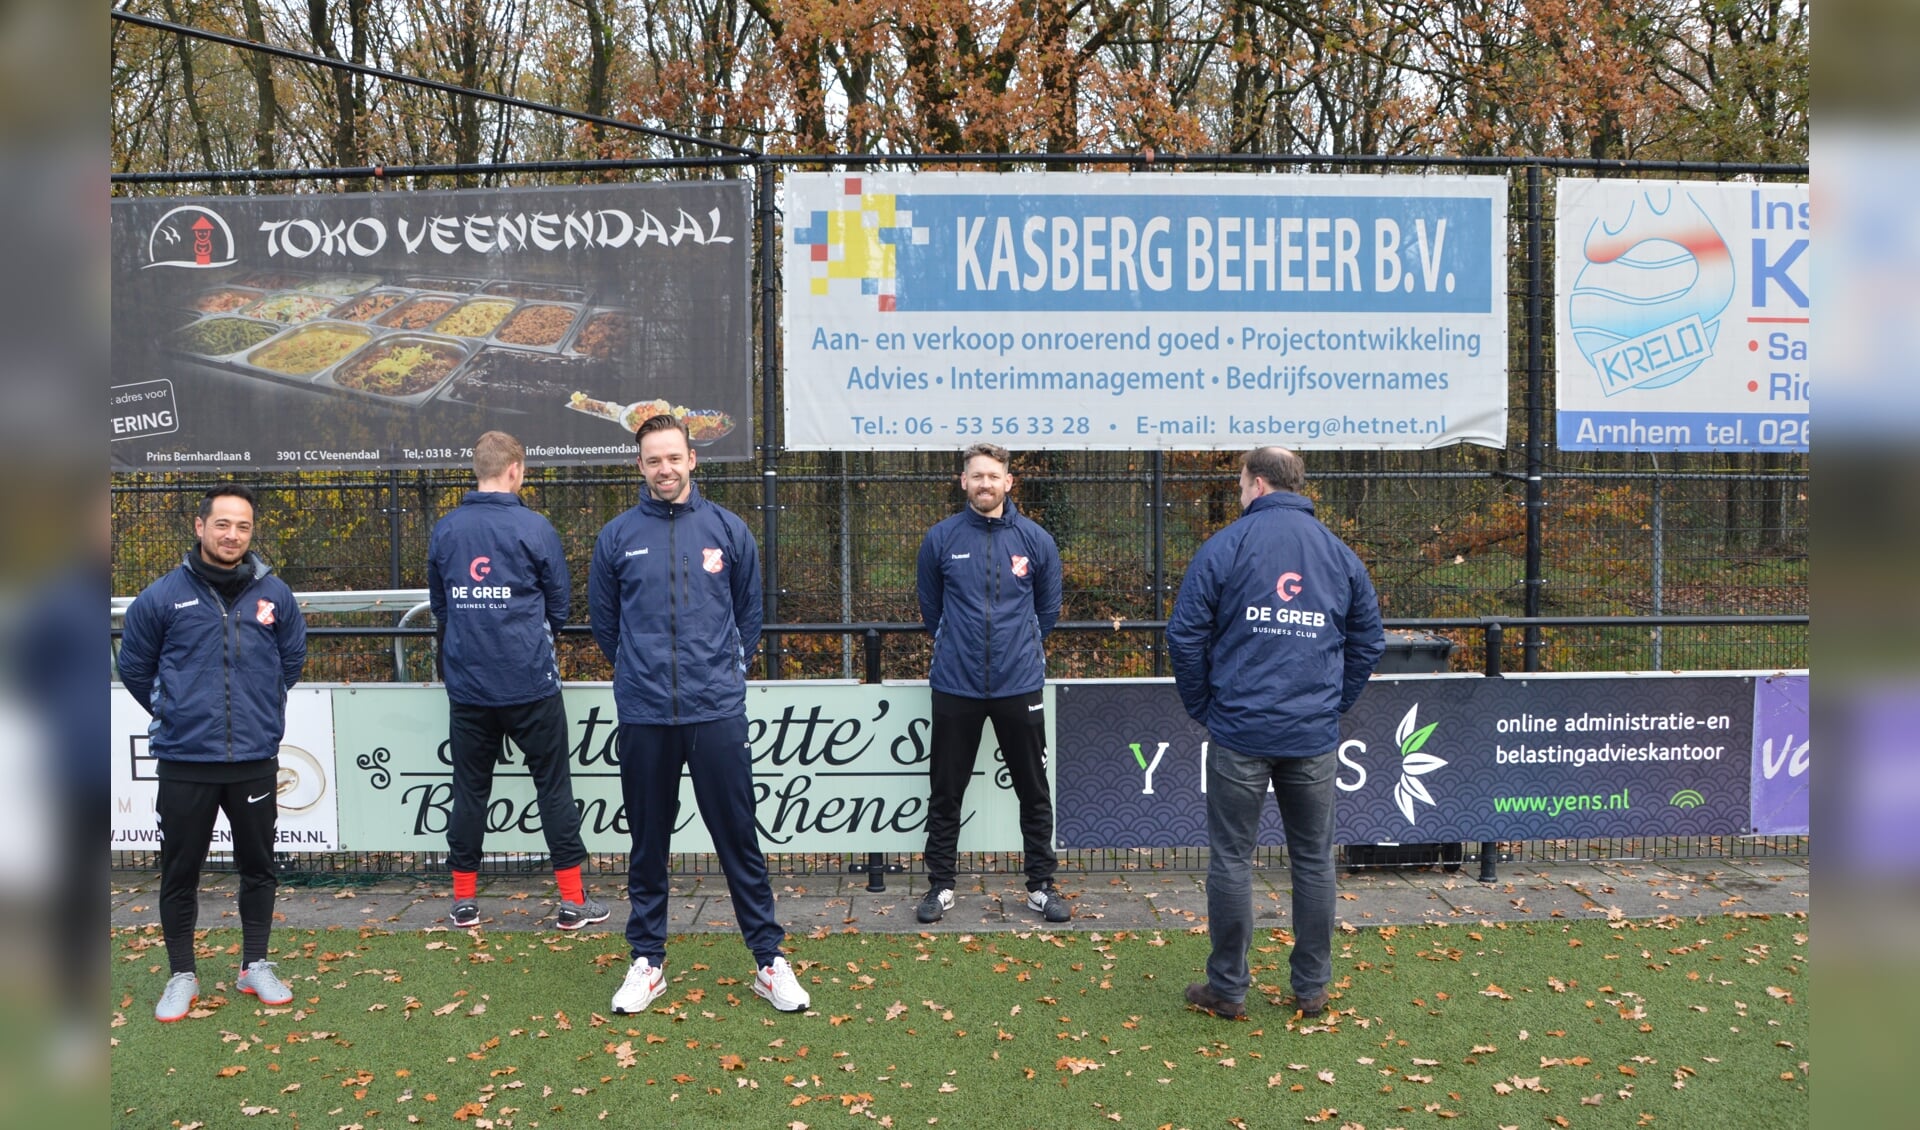 Trainers en leeftijdscoordinator in de nieuwe jassen. (foto: Theo Hoogendorp)